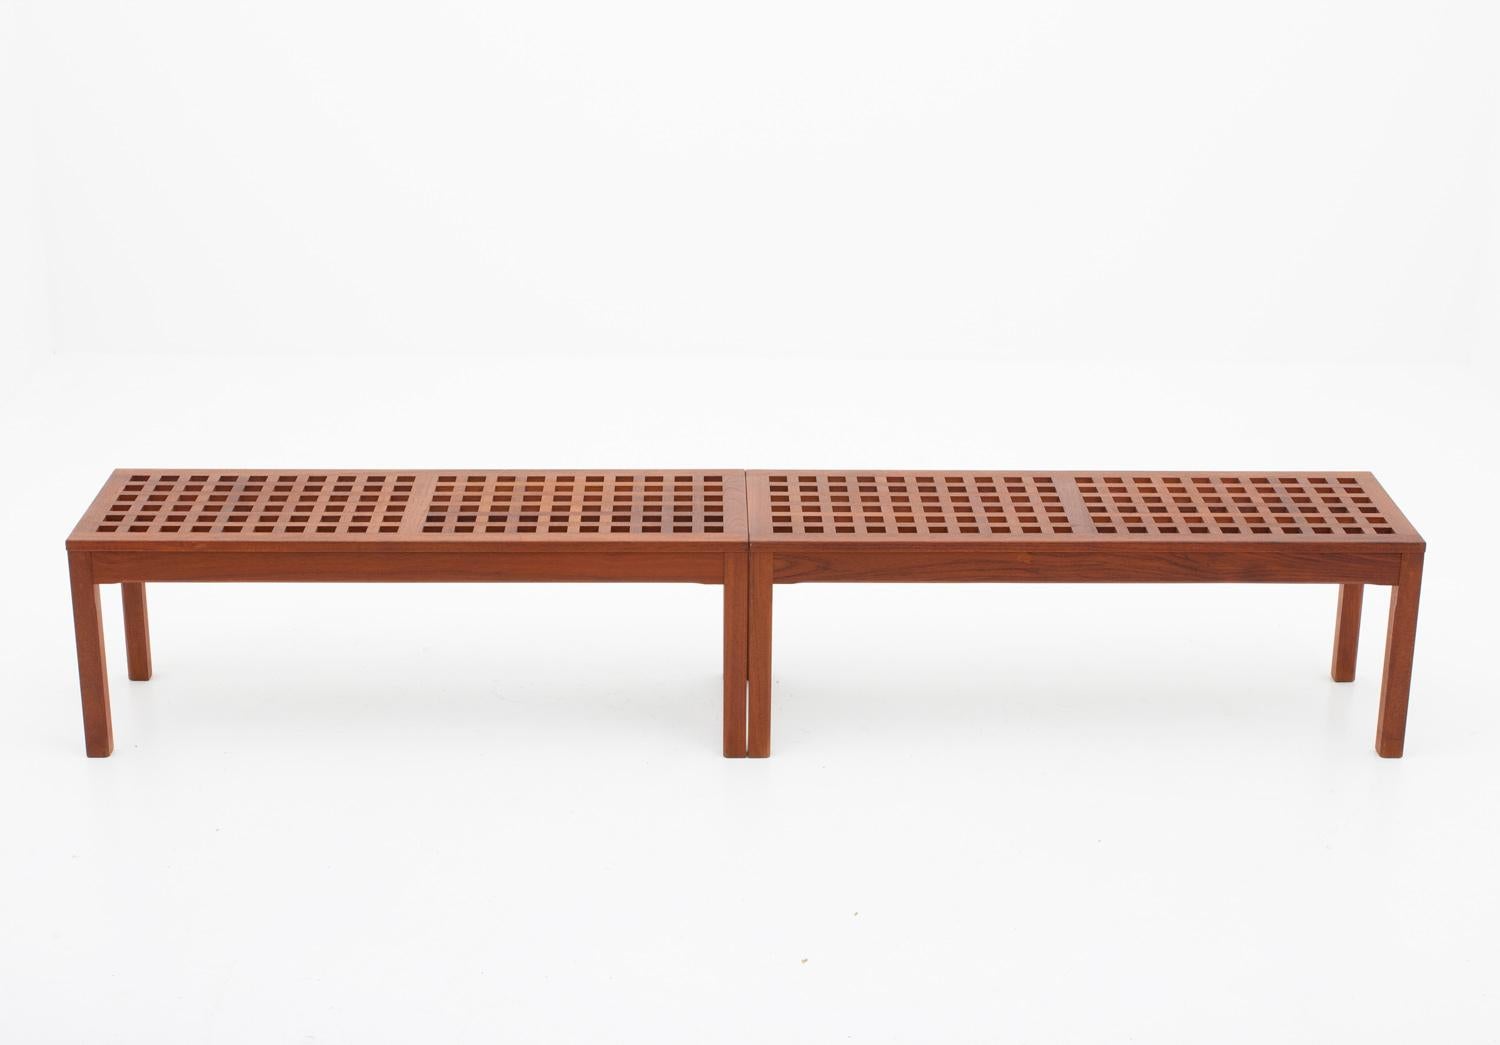 Paire de bancs scandinaves en teck par John Vedel-Rieper pour Källemo (Suède), années 1960.
Magnifiques bancs fabriqués en teck massif, créant un motif de croix. Un meuble très polyvalent qui peut être utilisé, par exemple, comme table basse,